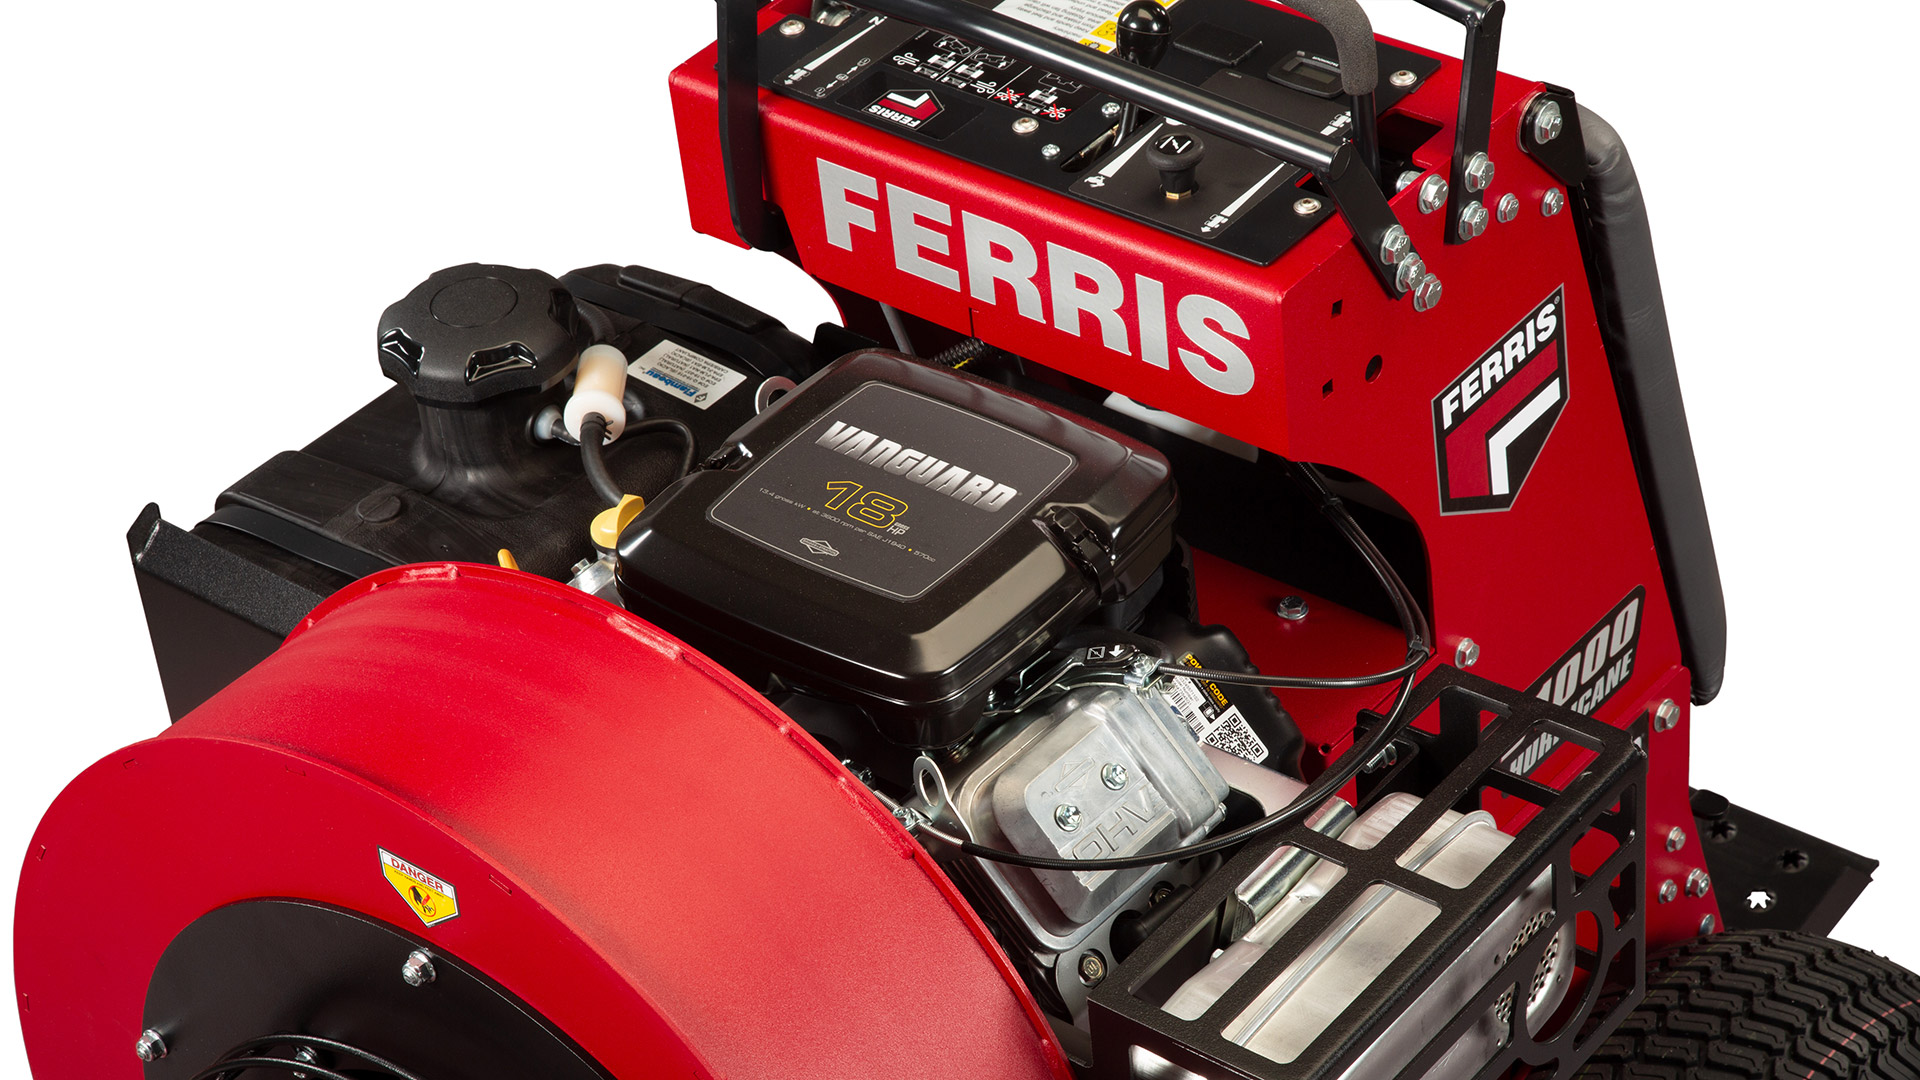 Ferris FB1000 Hurricane™ Stand-On Blower - Vanguard V-Twin Engine